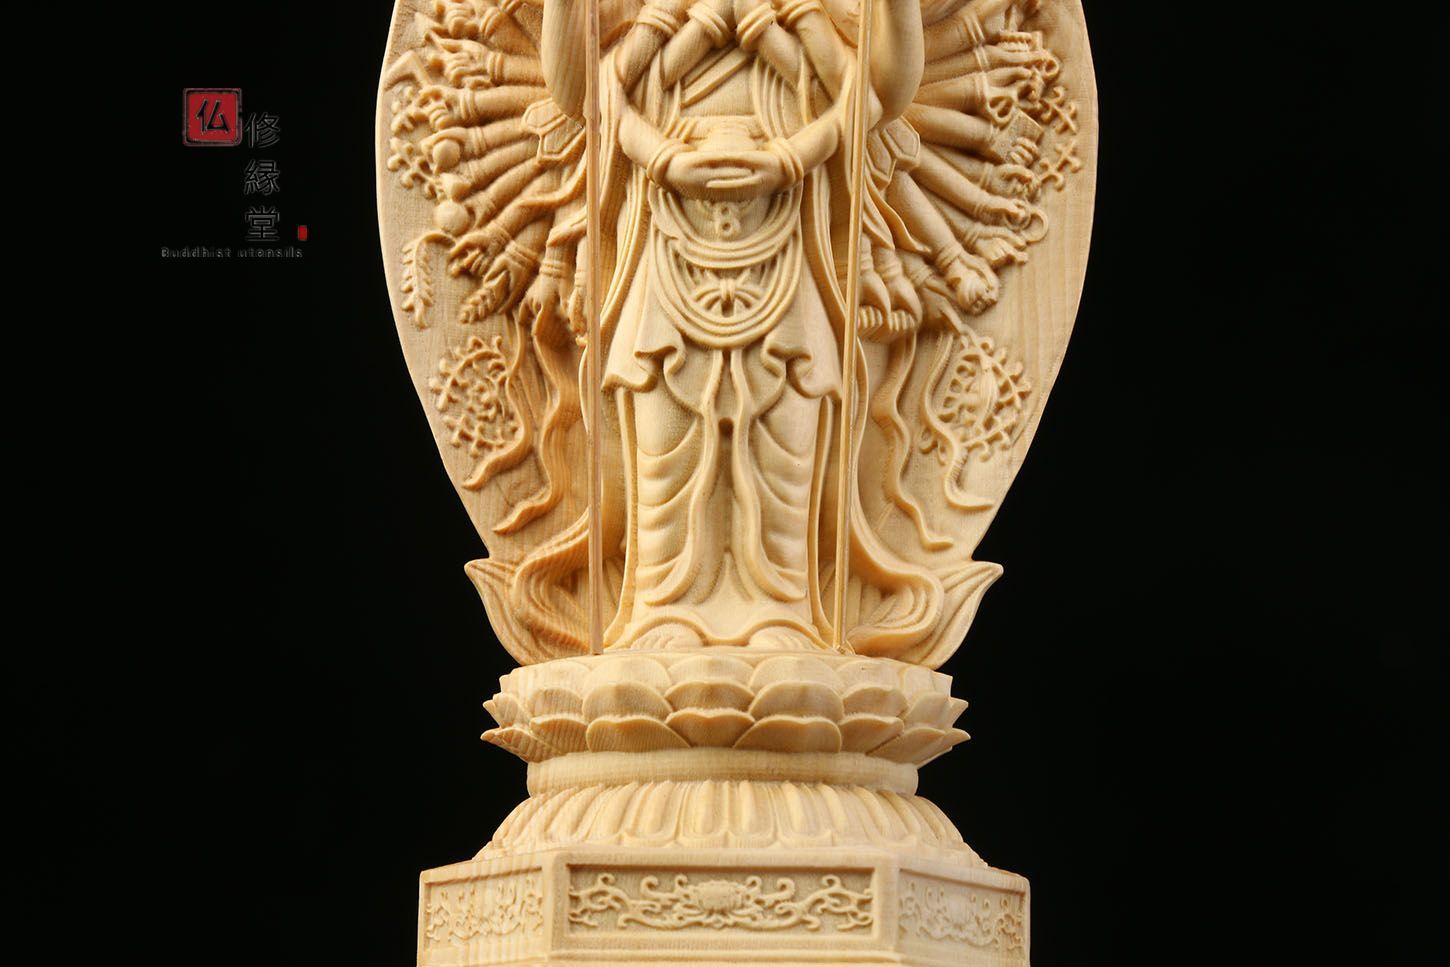 珍品 木彫り 仏像 千手観音菩薩立像 財前彫刻 一刀彫 天然木檜材 福徳 